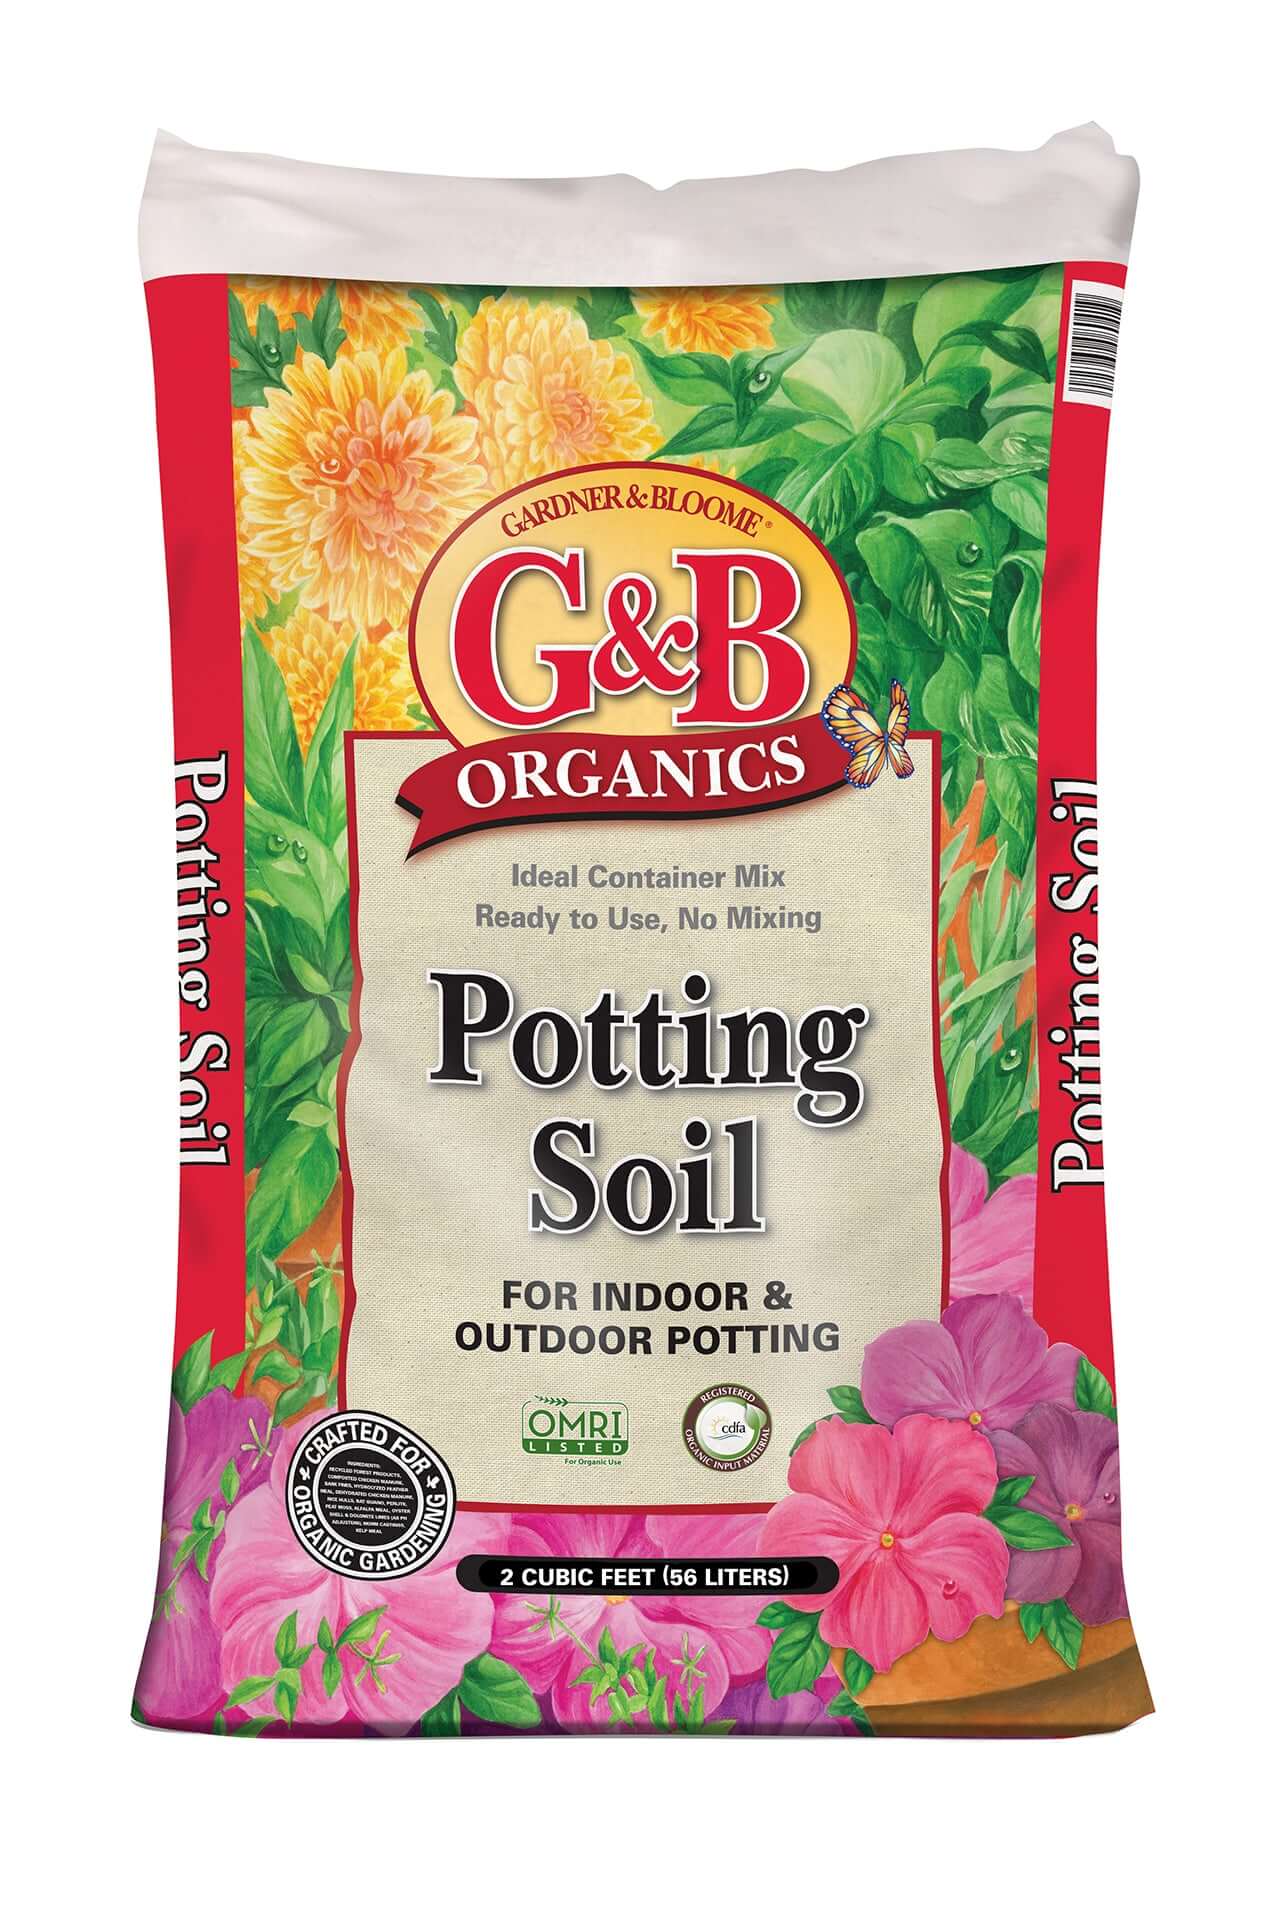 Potting Soil for Indoor & Outdoor Potting (2 cu. ft. bag) (7890269634815)